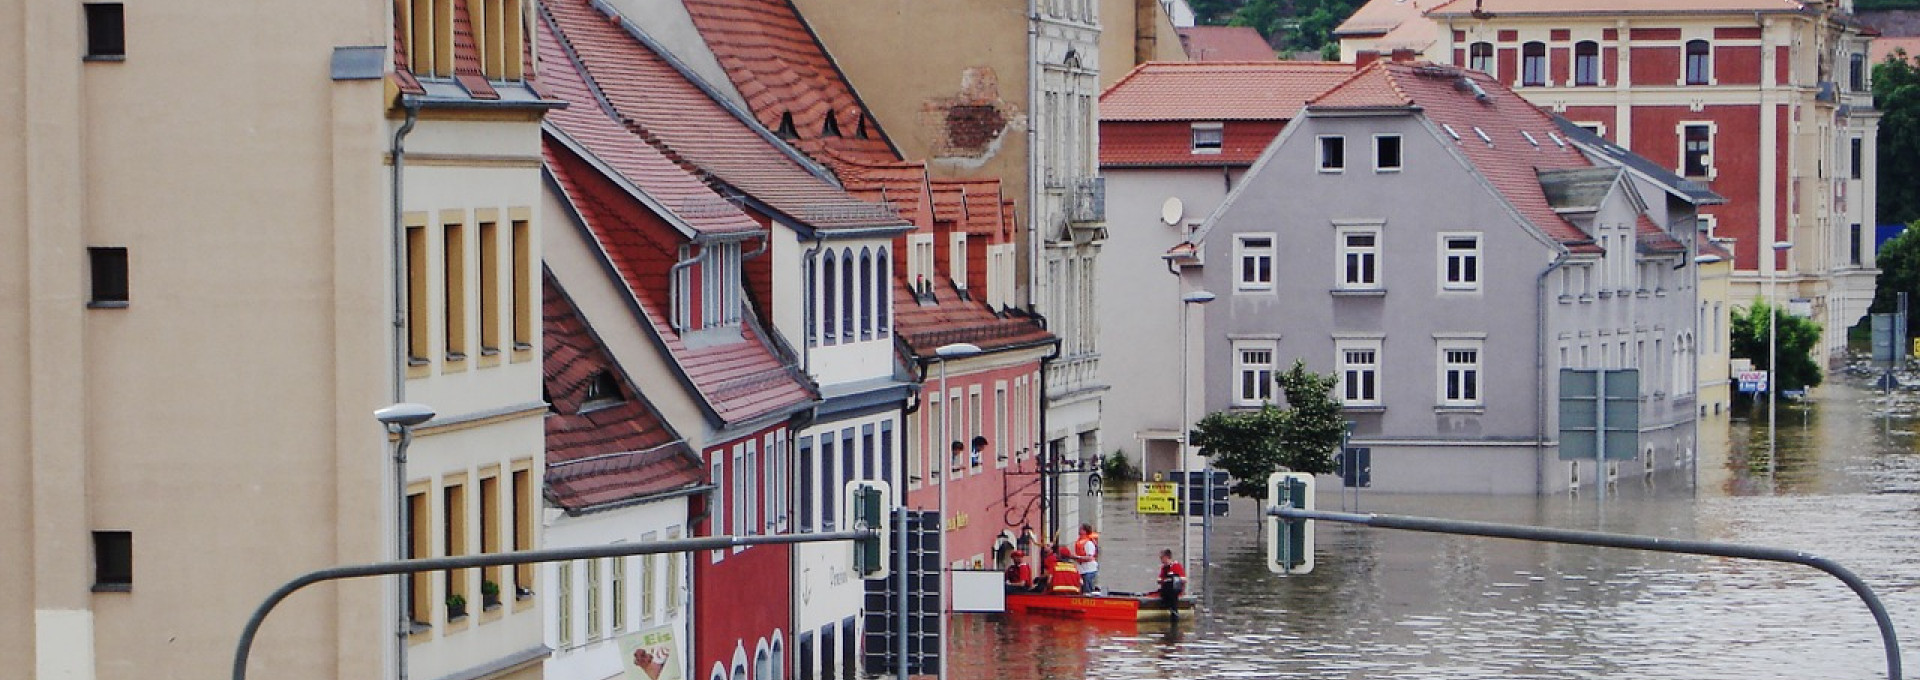 Eine Straße steht komplett unter Wasser, Menschen in einem Schlauchboot retten Personen aus einem Haus